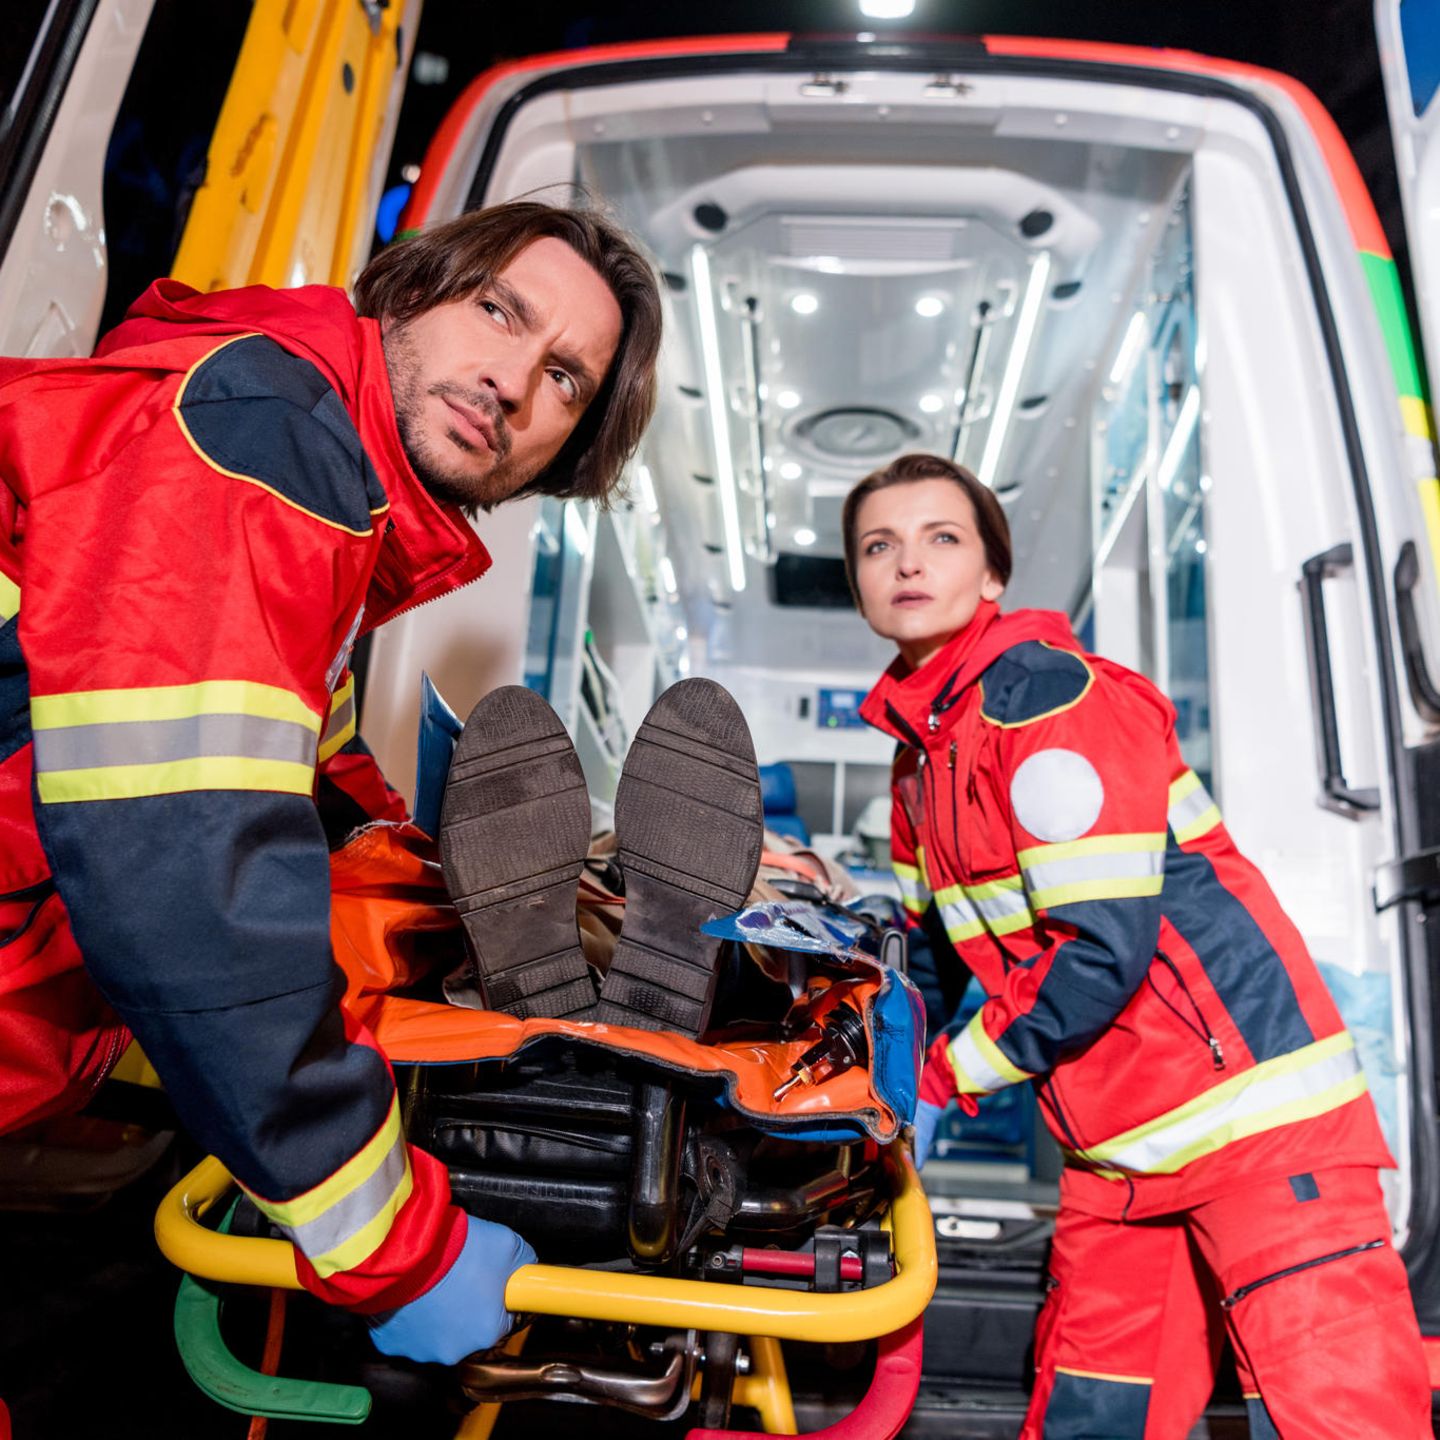 Rettungssanitäter: Berufsbild und Ausbildung